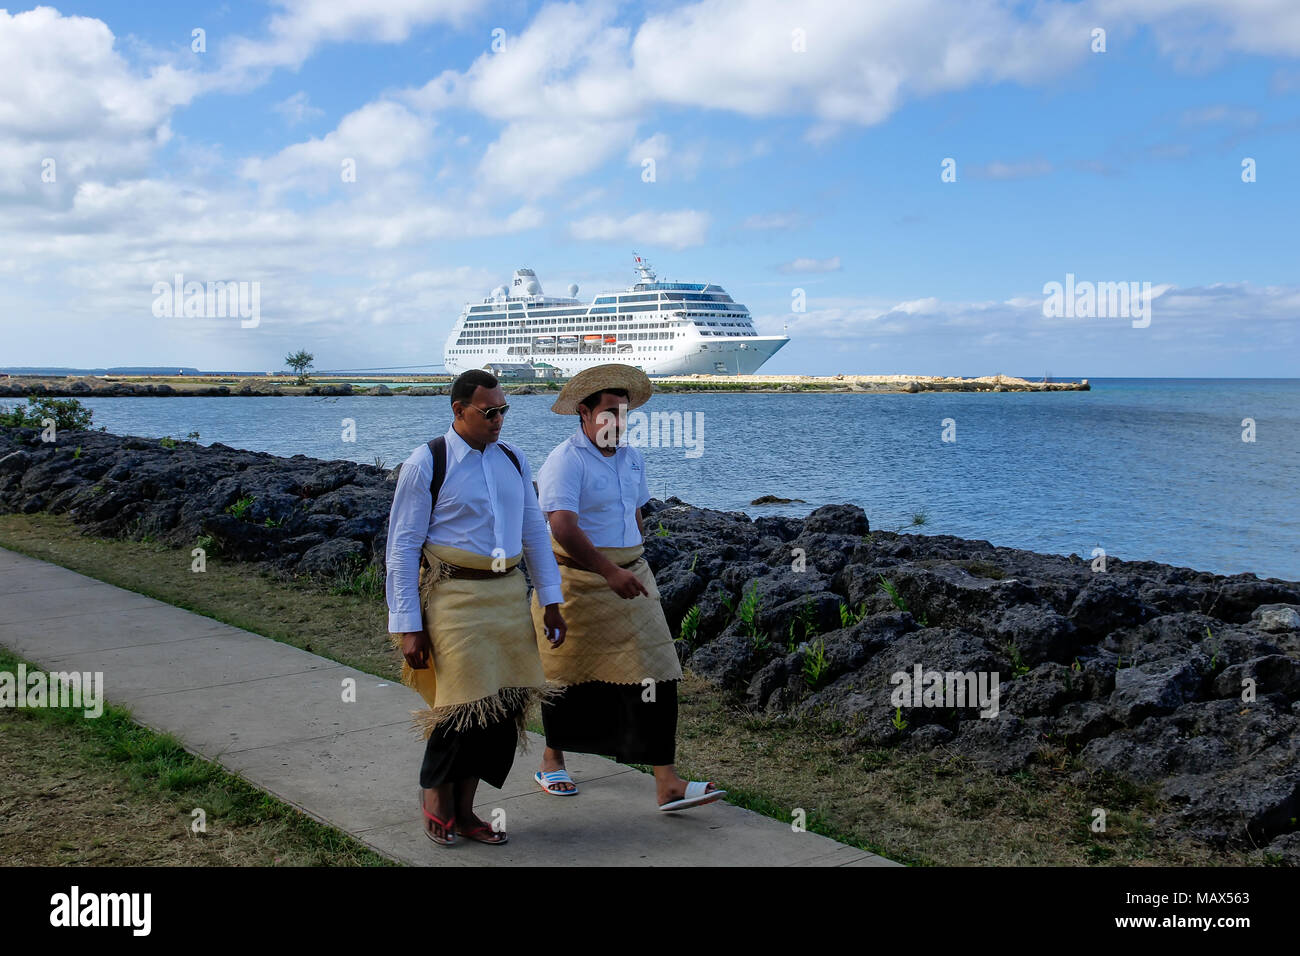 Les hommes de marcher au bord de l'eau dans Nuku'alofa, Tonga sur l'île de Tongatapu. Nukuʻalofa est la capitale du Royaume des Tonga Banque D'Images